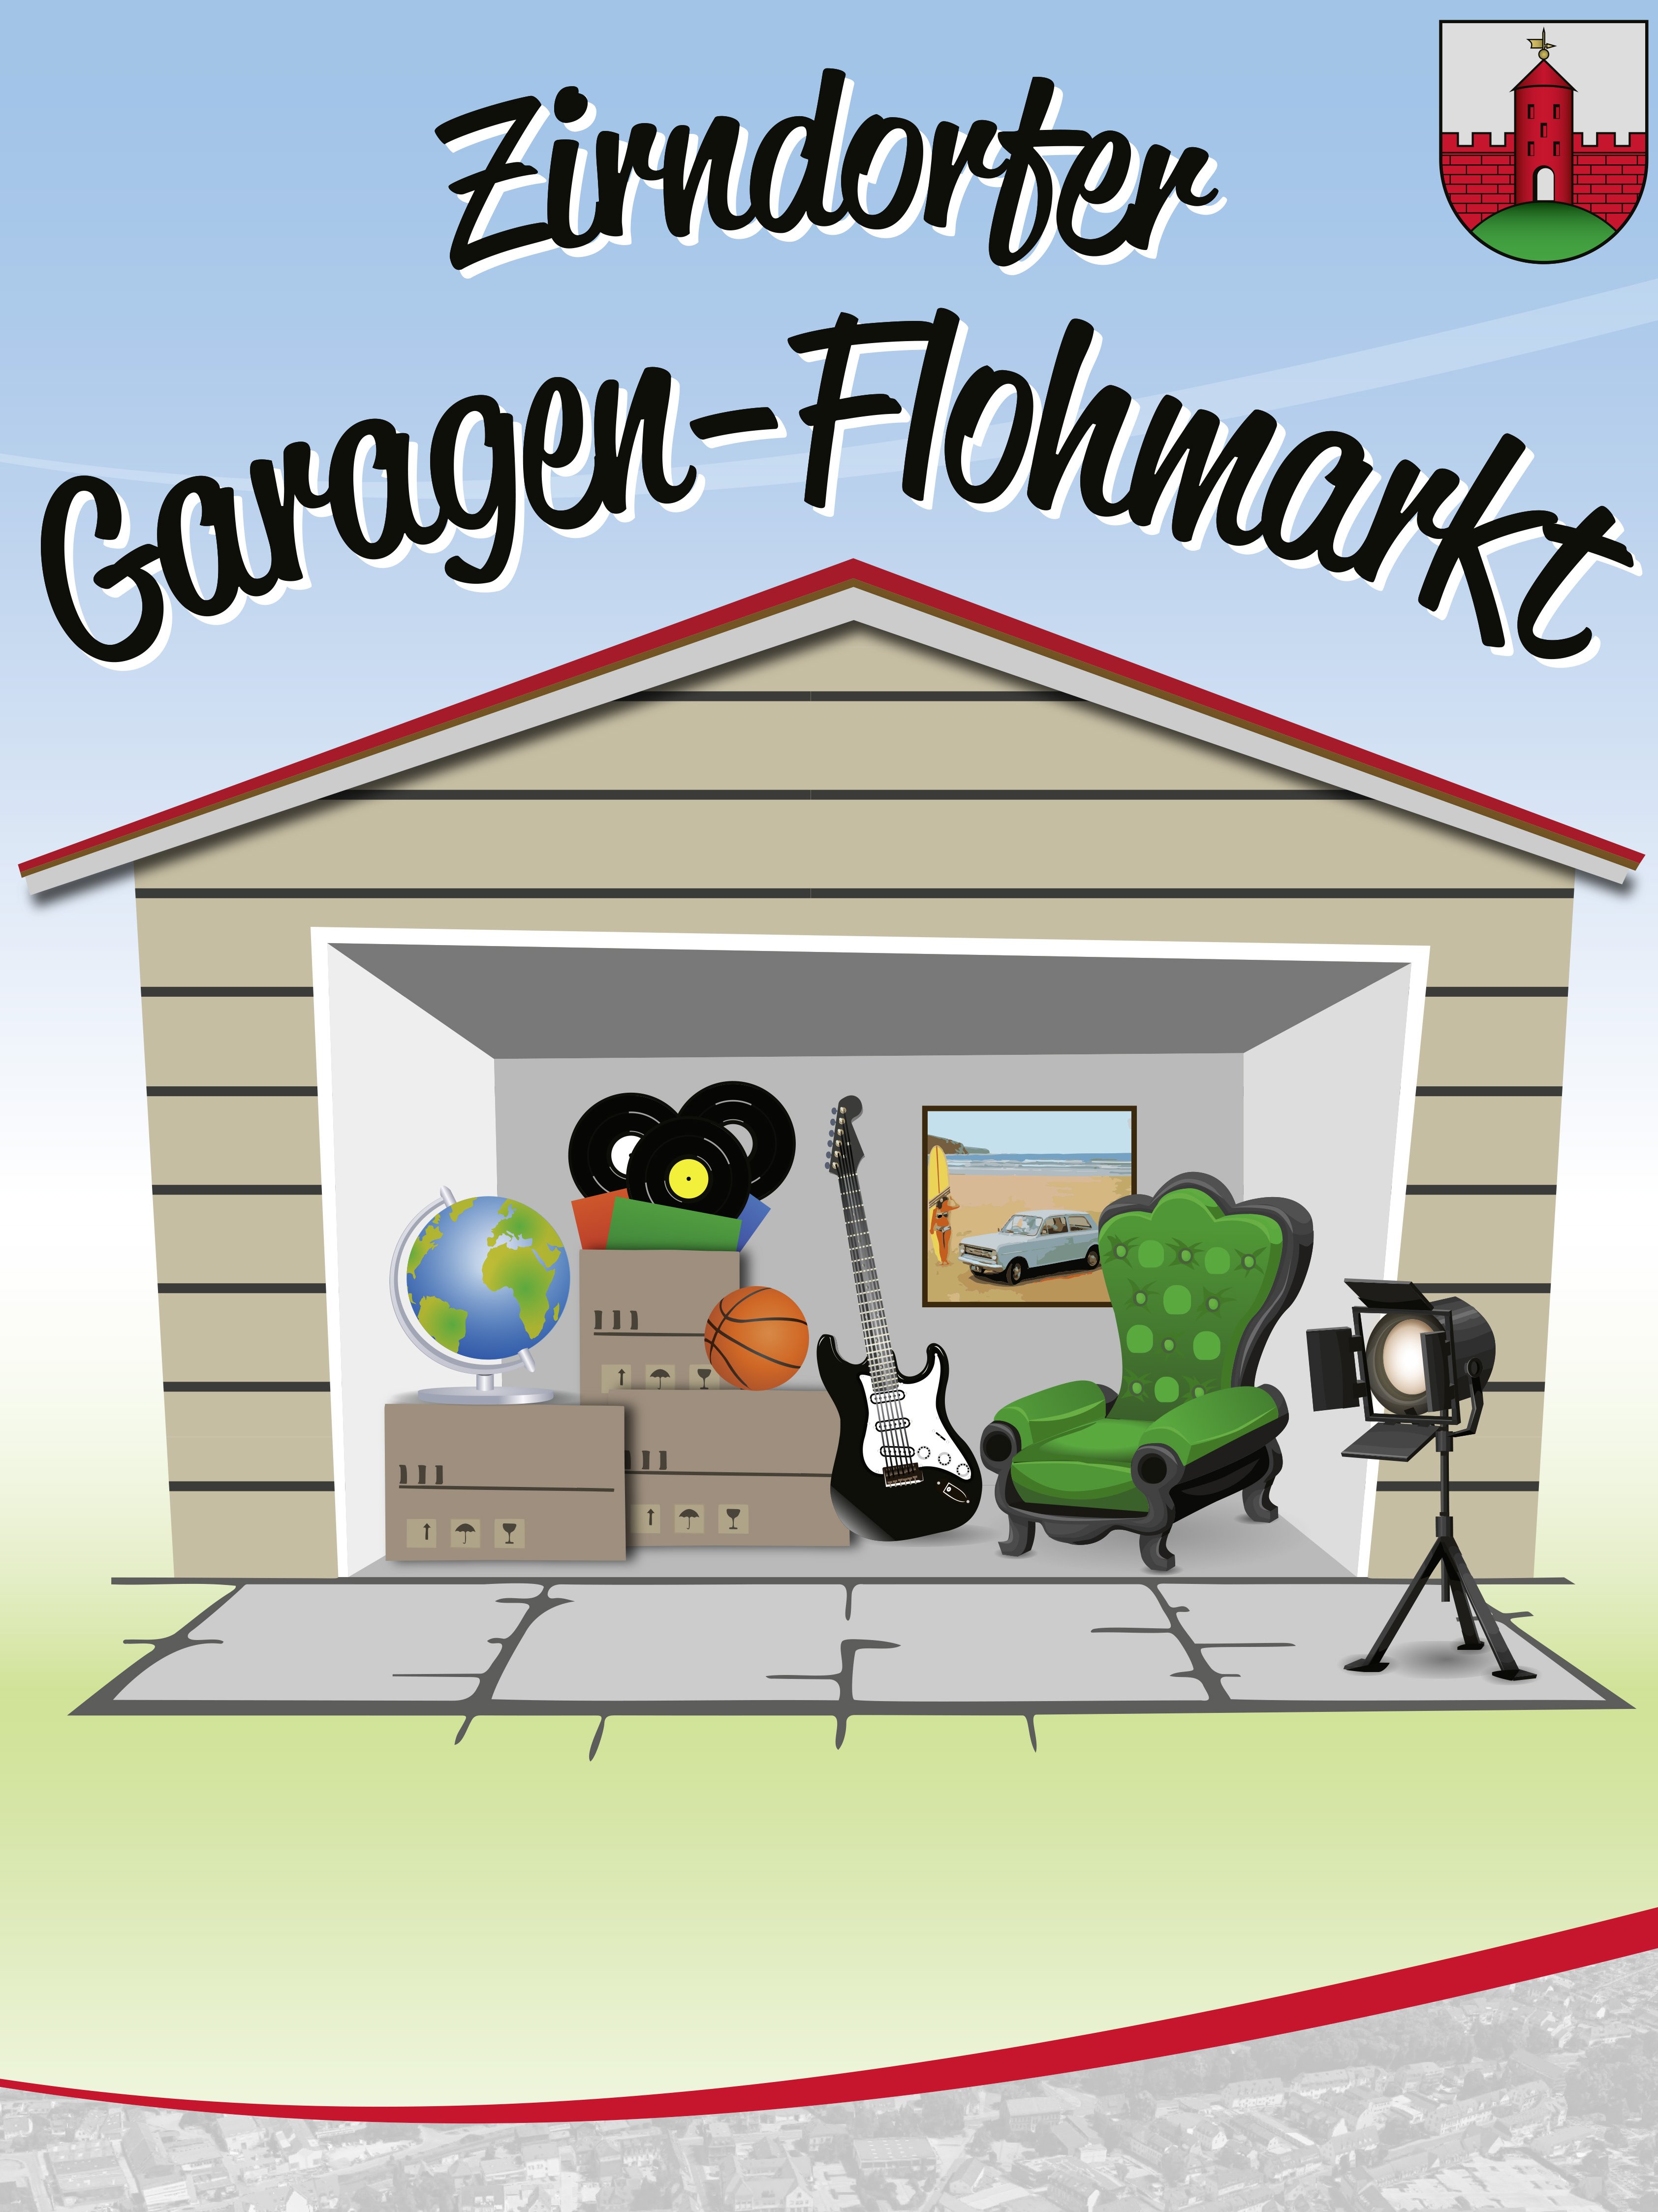 Symbolbild für den Garagenflohmarkt